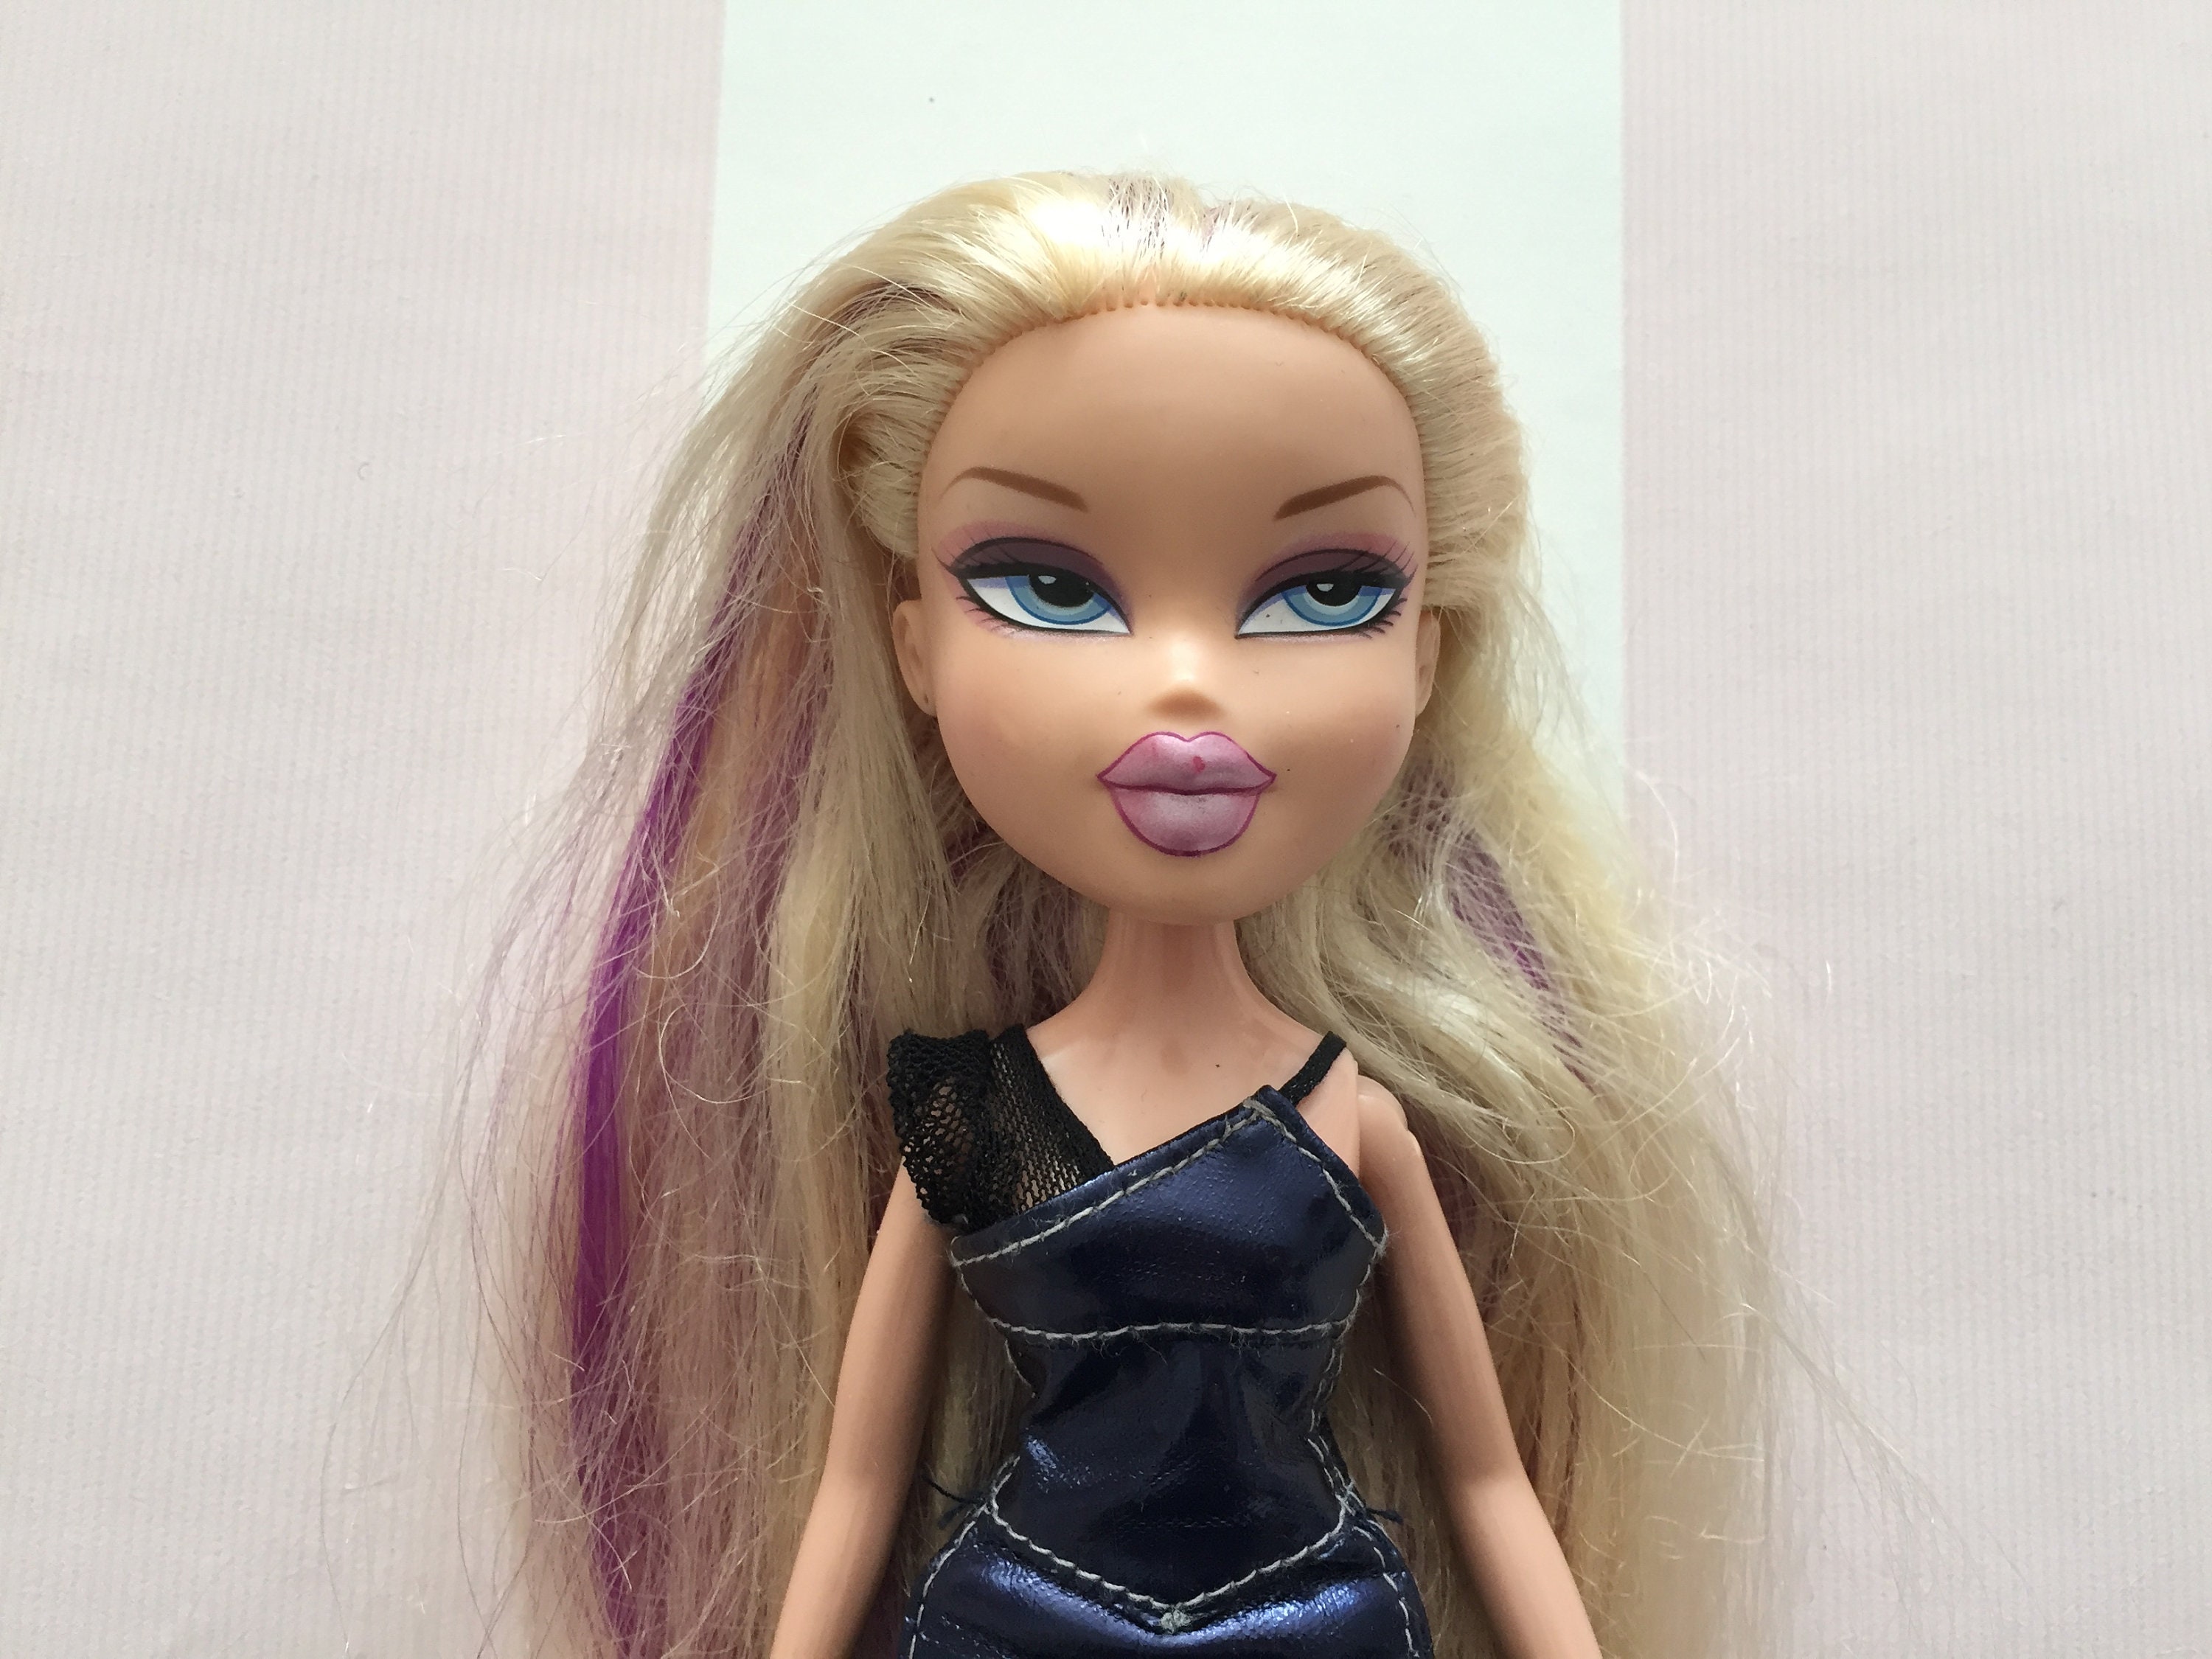 MGA Bratz Magic Hair Cloe Grow and Cut Doll Blonde NIB Blue